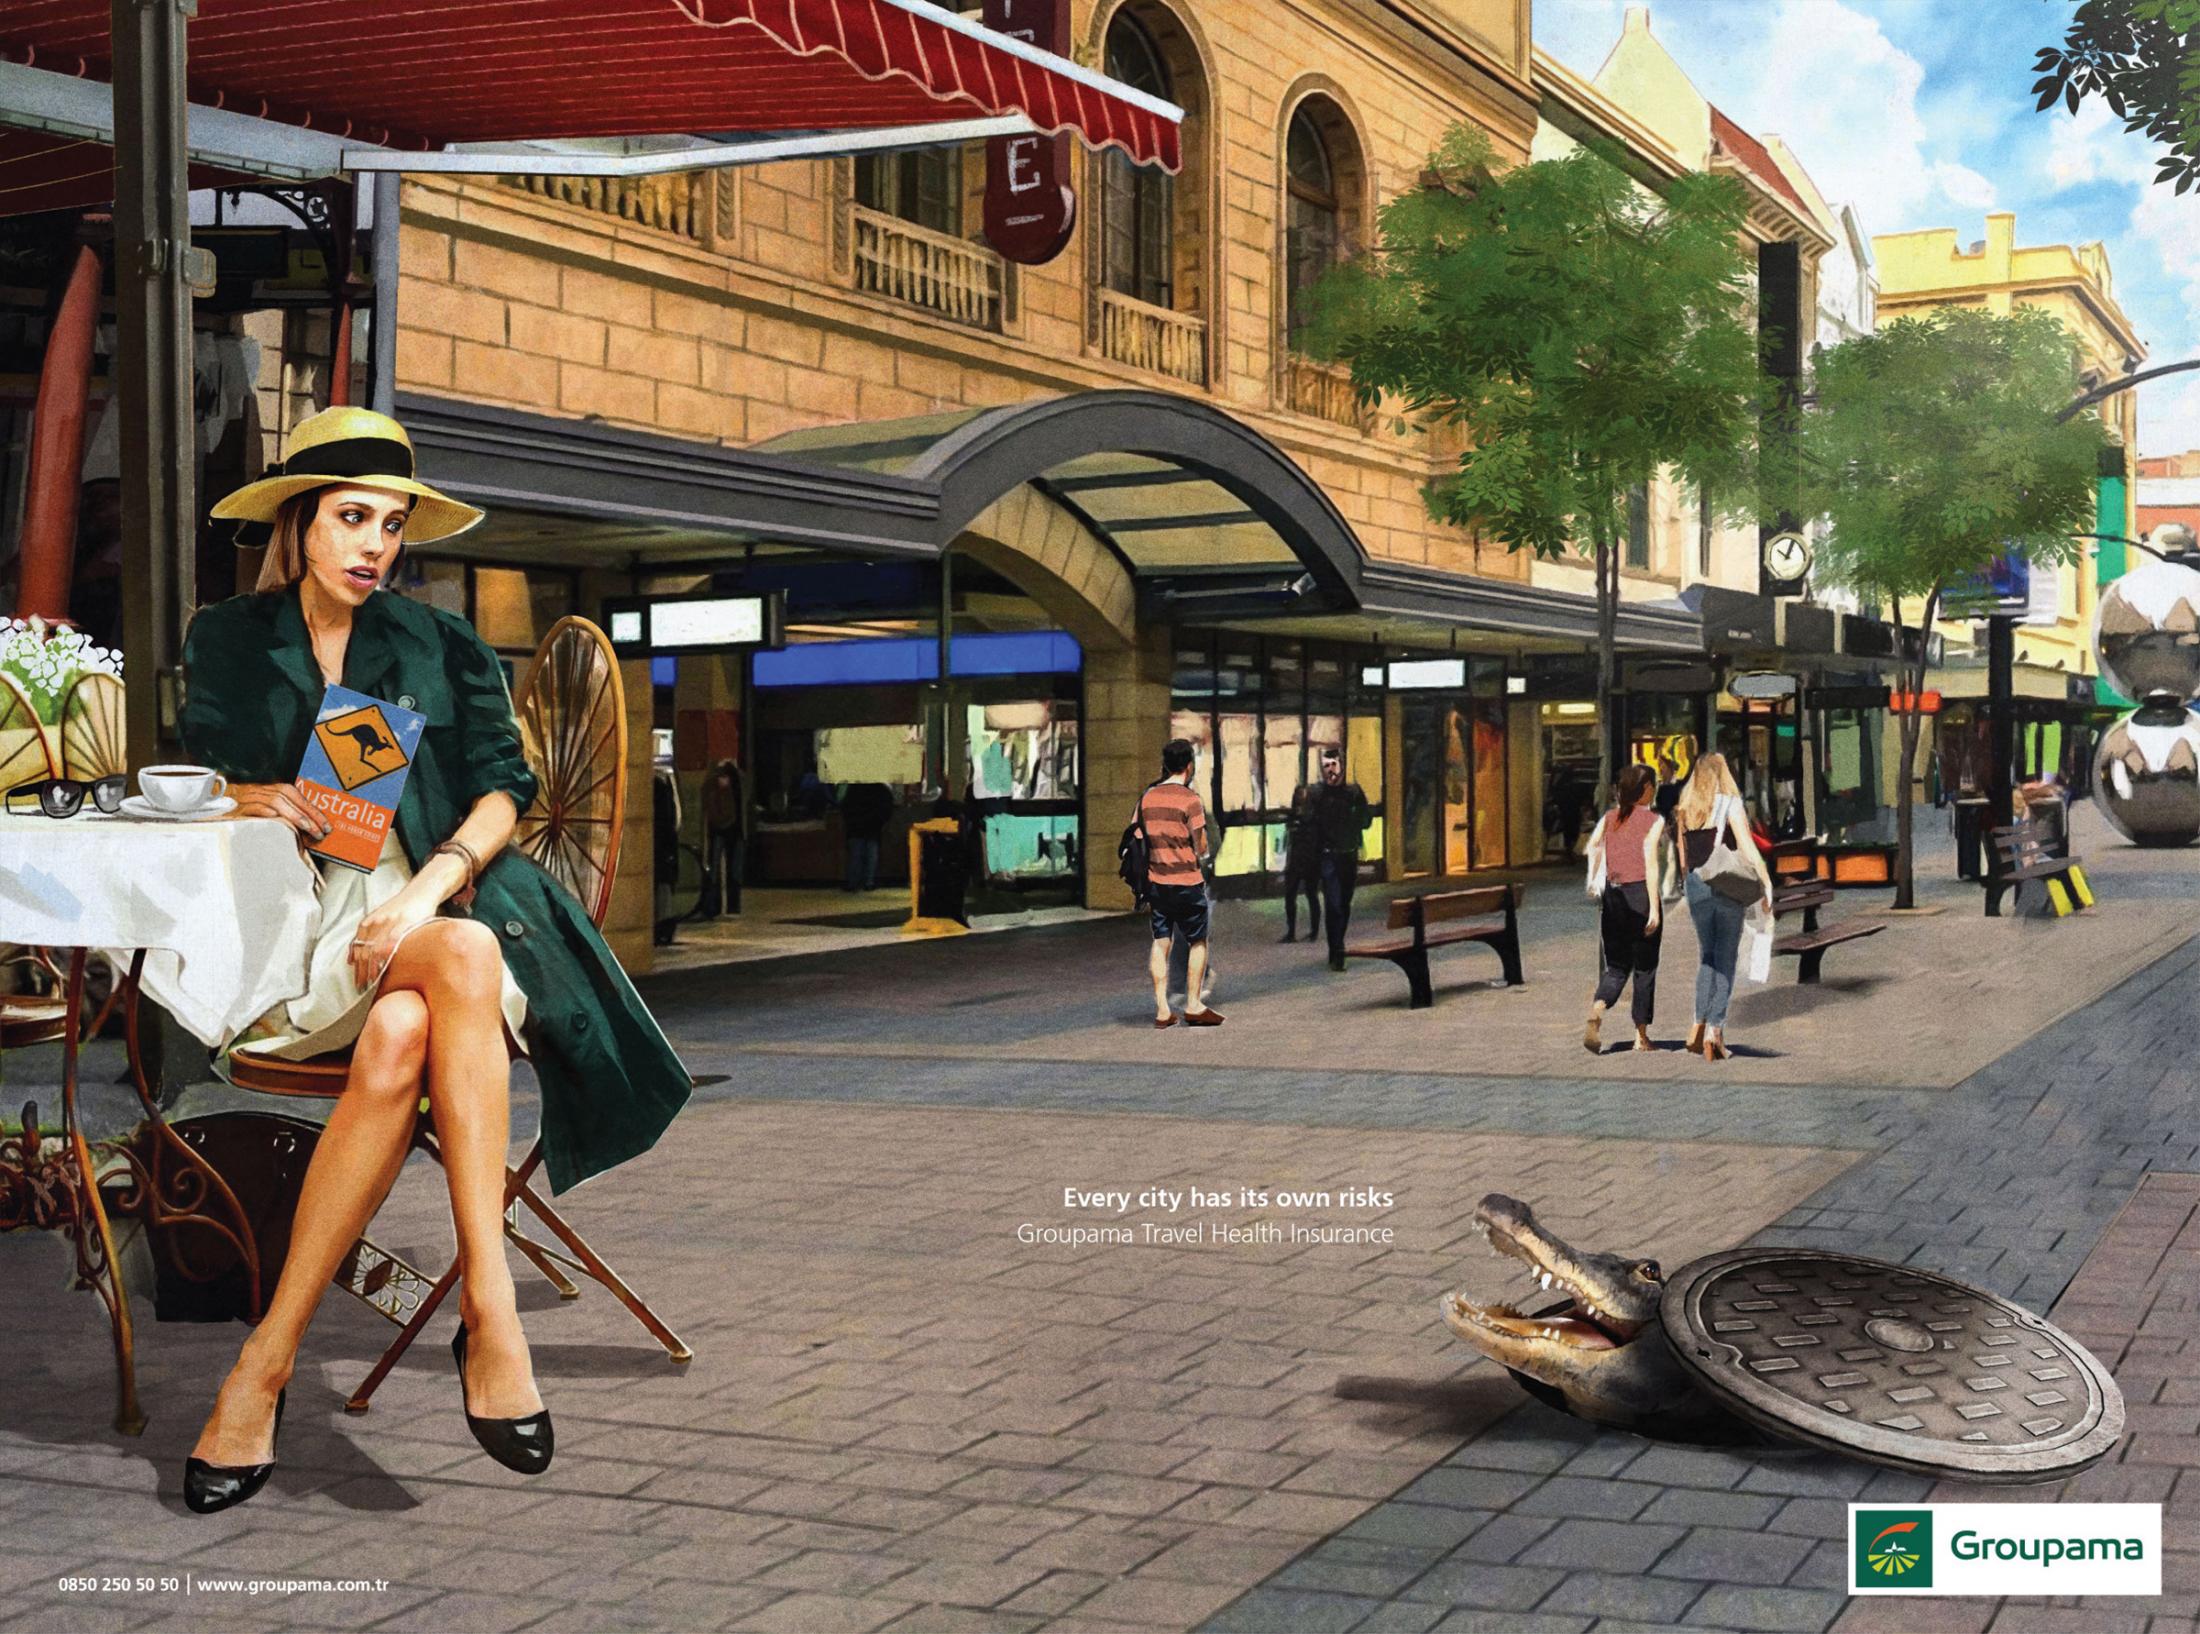 Her Şehrin Kendi Riski Vardır, Avustralya - GROUPAMA-türkiyenin-reklamları